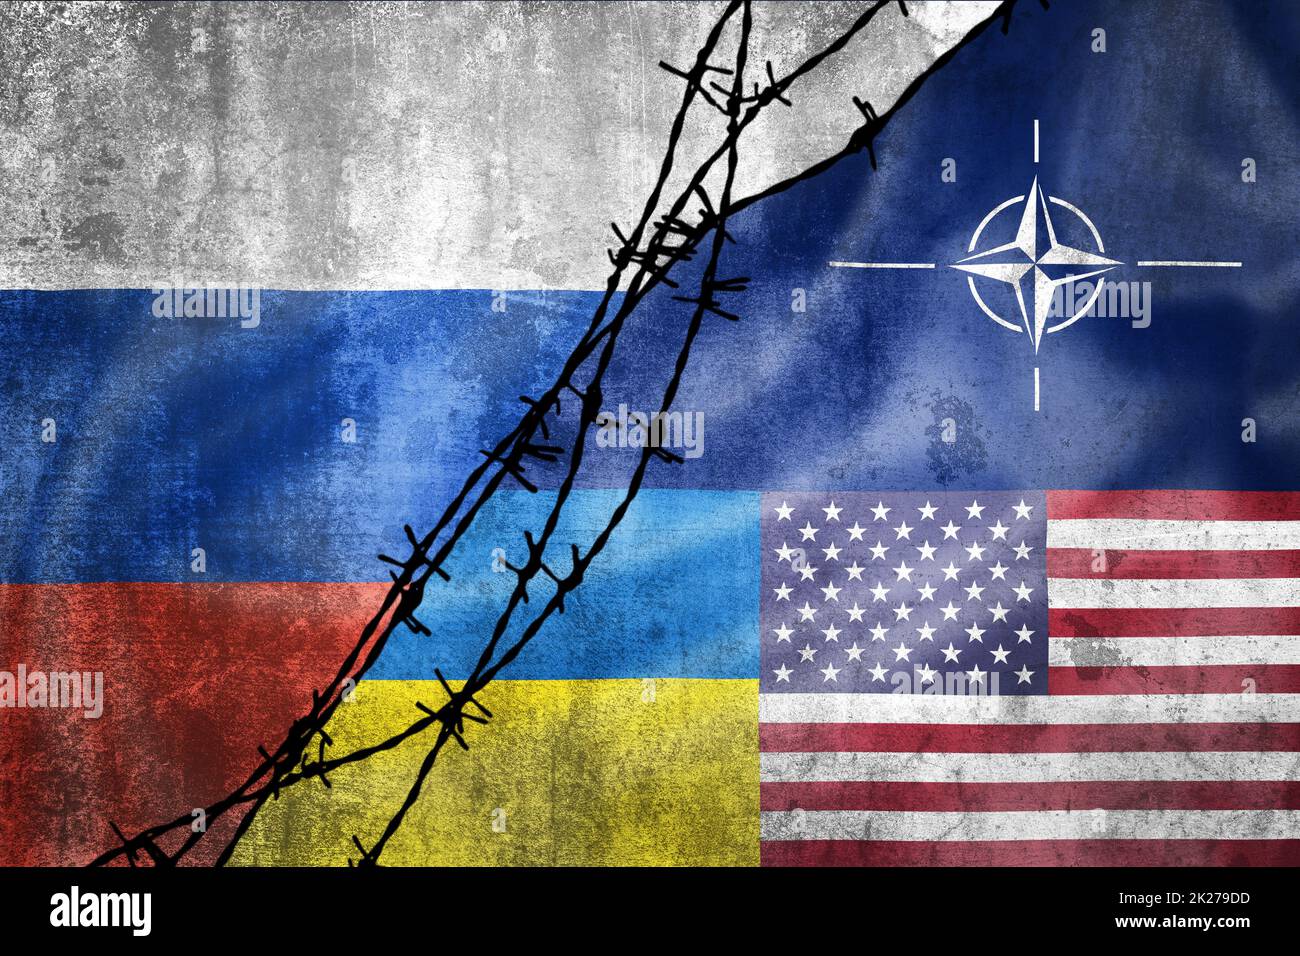 Drapeaux de grunge de la Fédération de Russie, de l'OTAN, des Etats-Unis et de l'Ukraine divisés par l'illustration de barbelés Banque D'Images